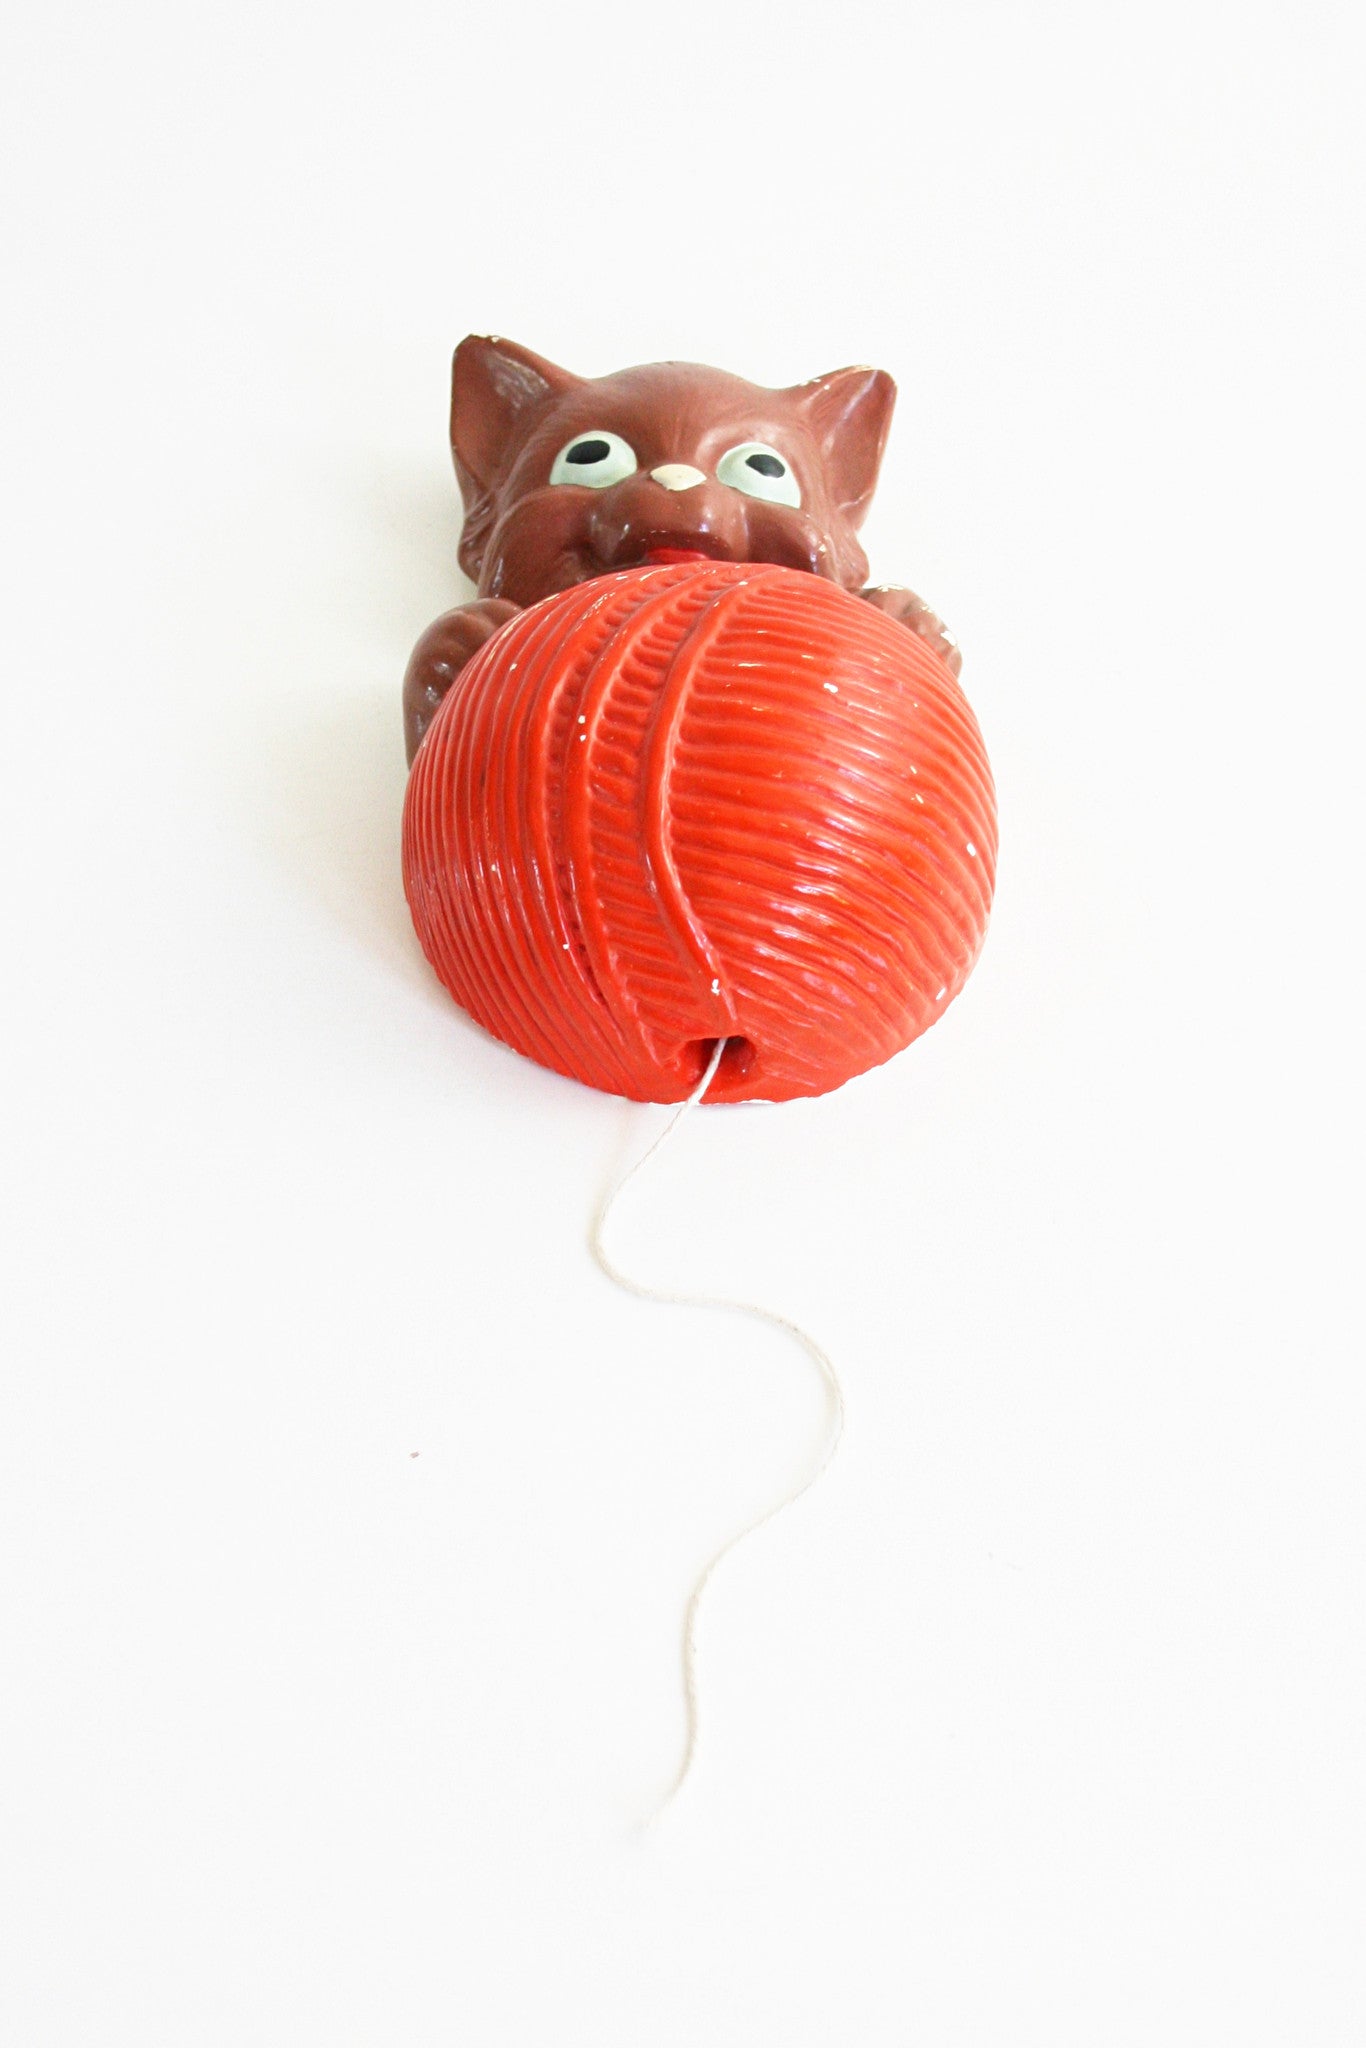 SOLD - Vintage Plaster Kitten String Holder / 1940s Chalkware Cat String Dispenser